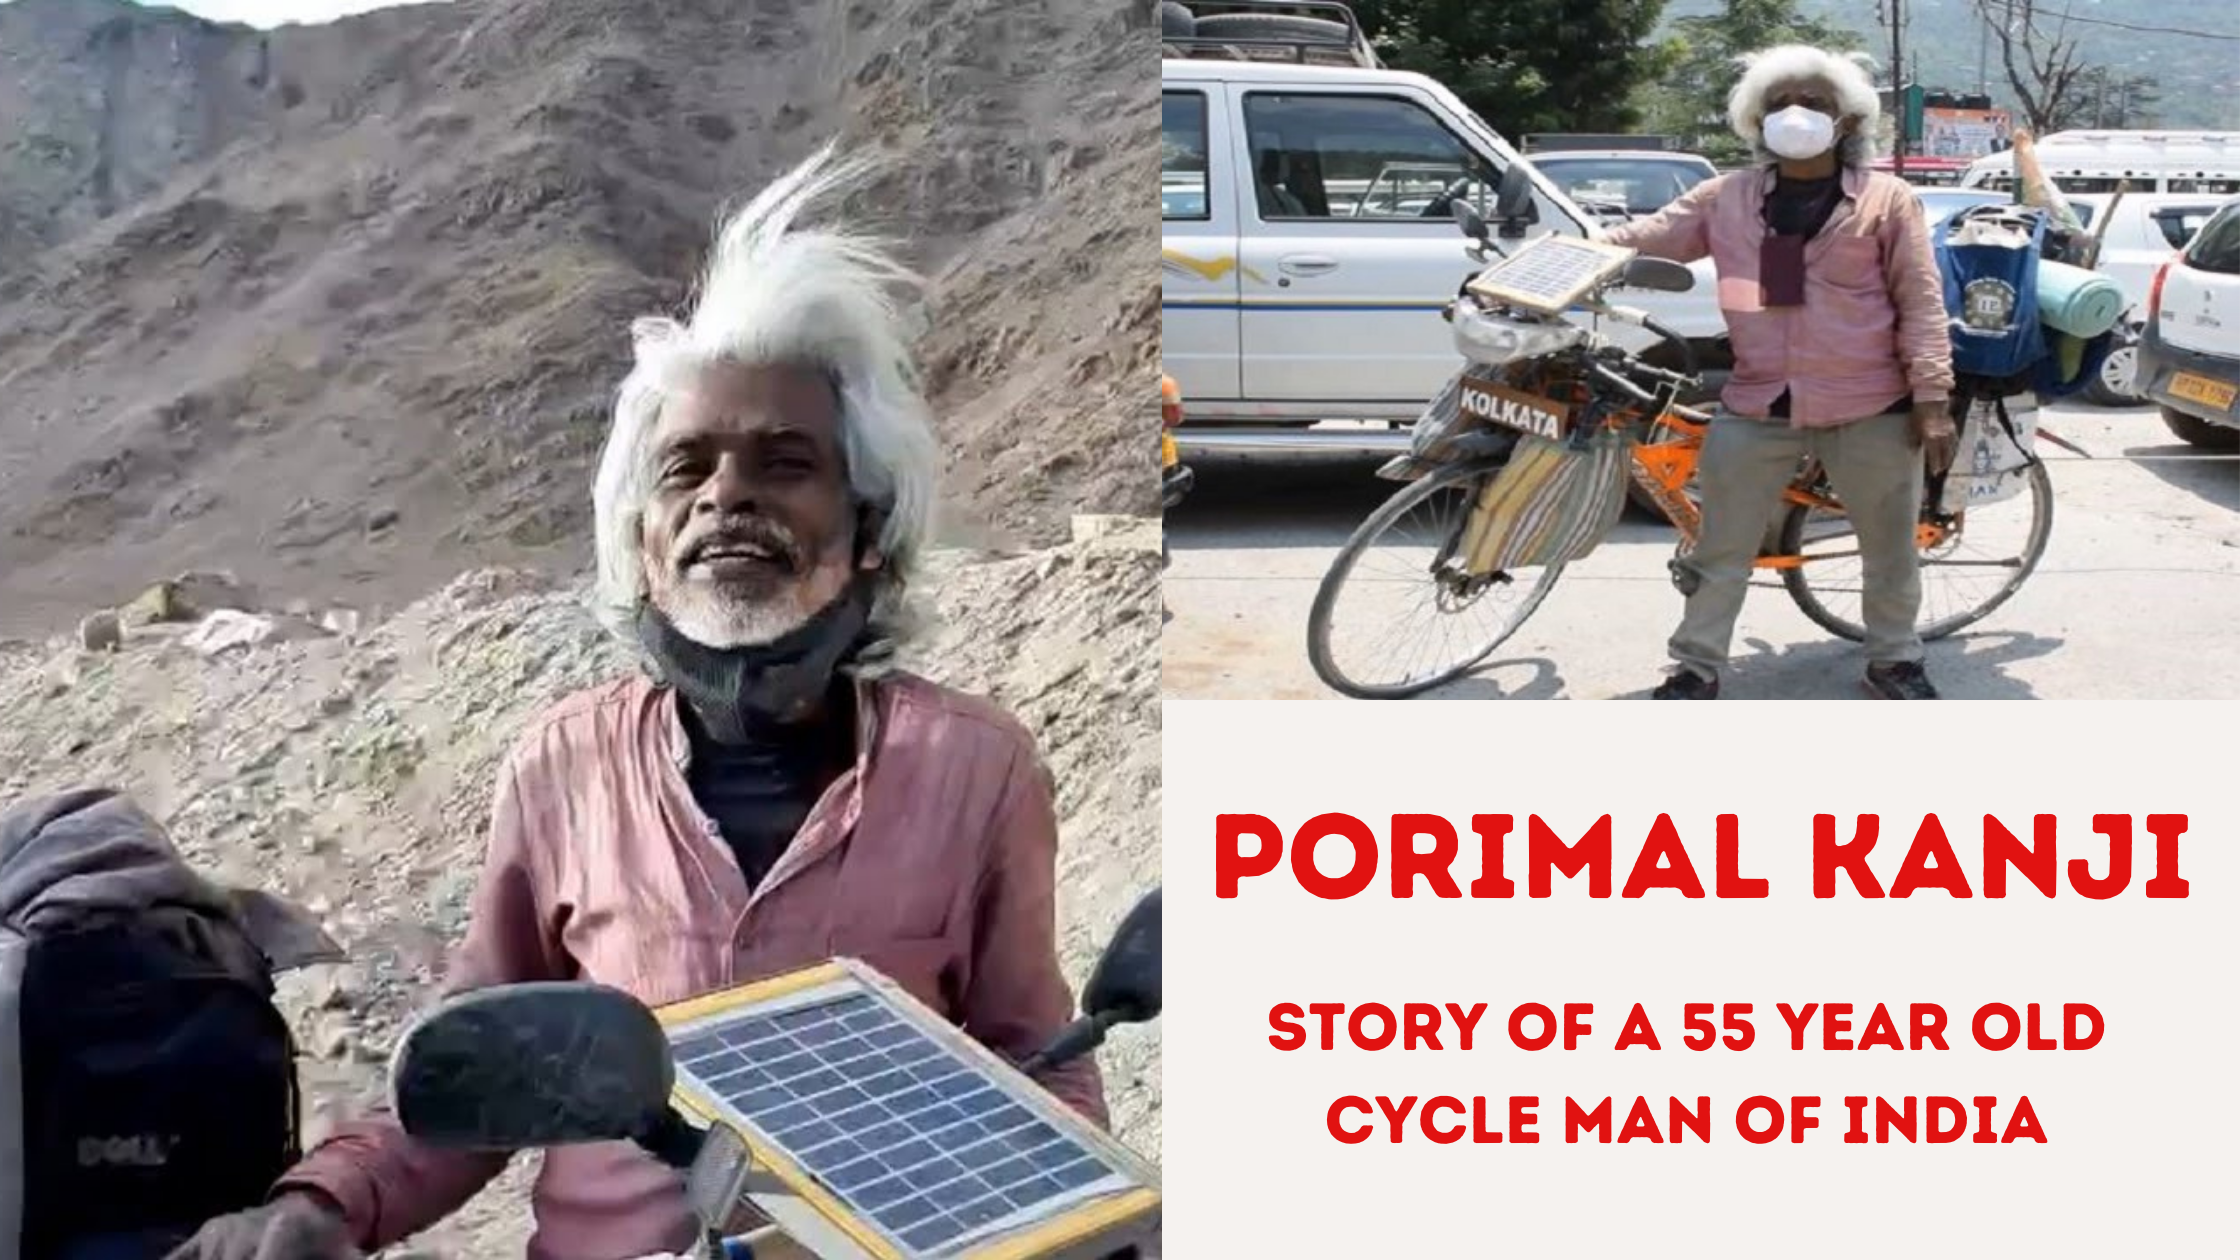 Porimal Kanji Cycle Man Of India